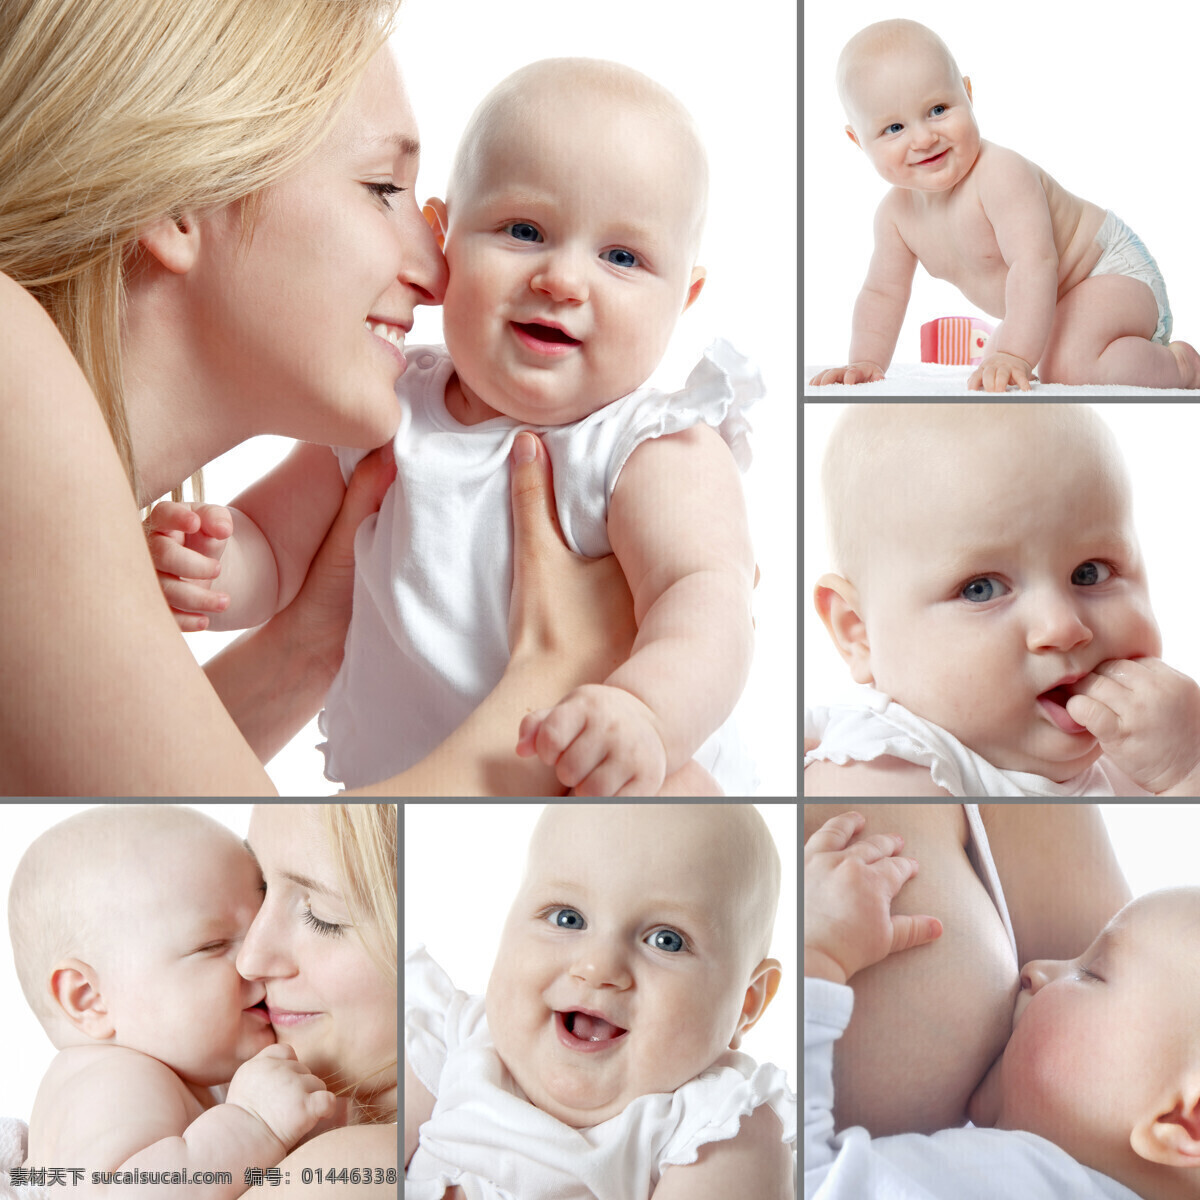 抱 婴儿 妈妈宝宝 宝宝 婴幼儿 喂奶 外国宝宝 可爱宝宝 母子 外国妈妈 外国美女妈妈 生活人物 人物图片